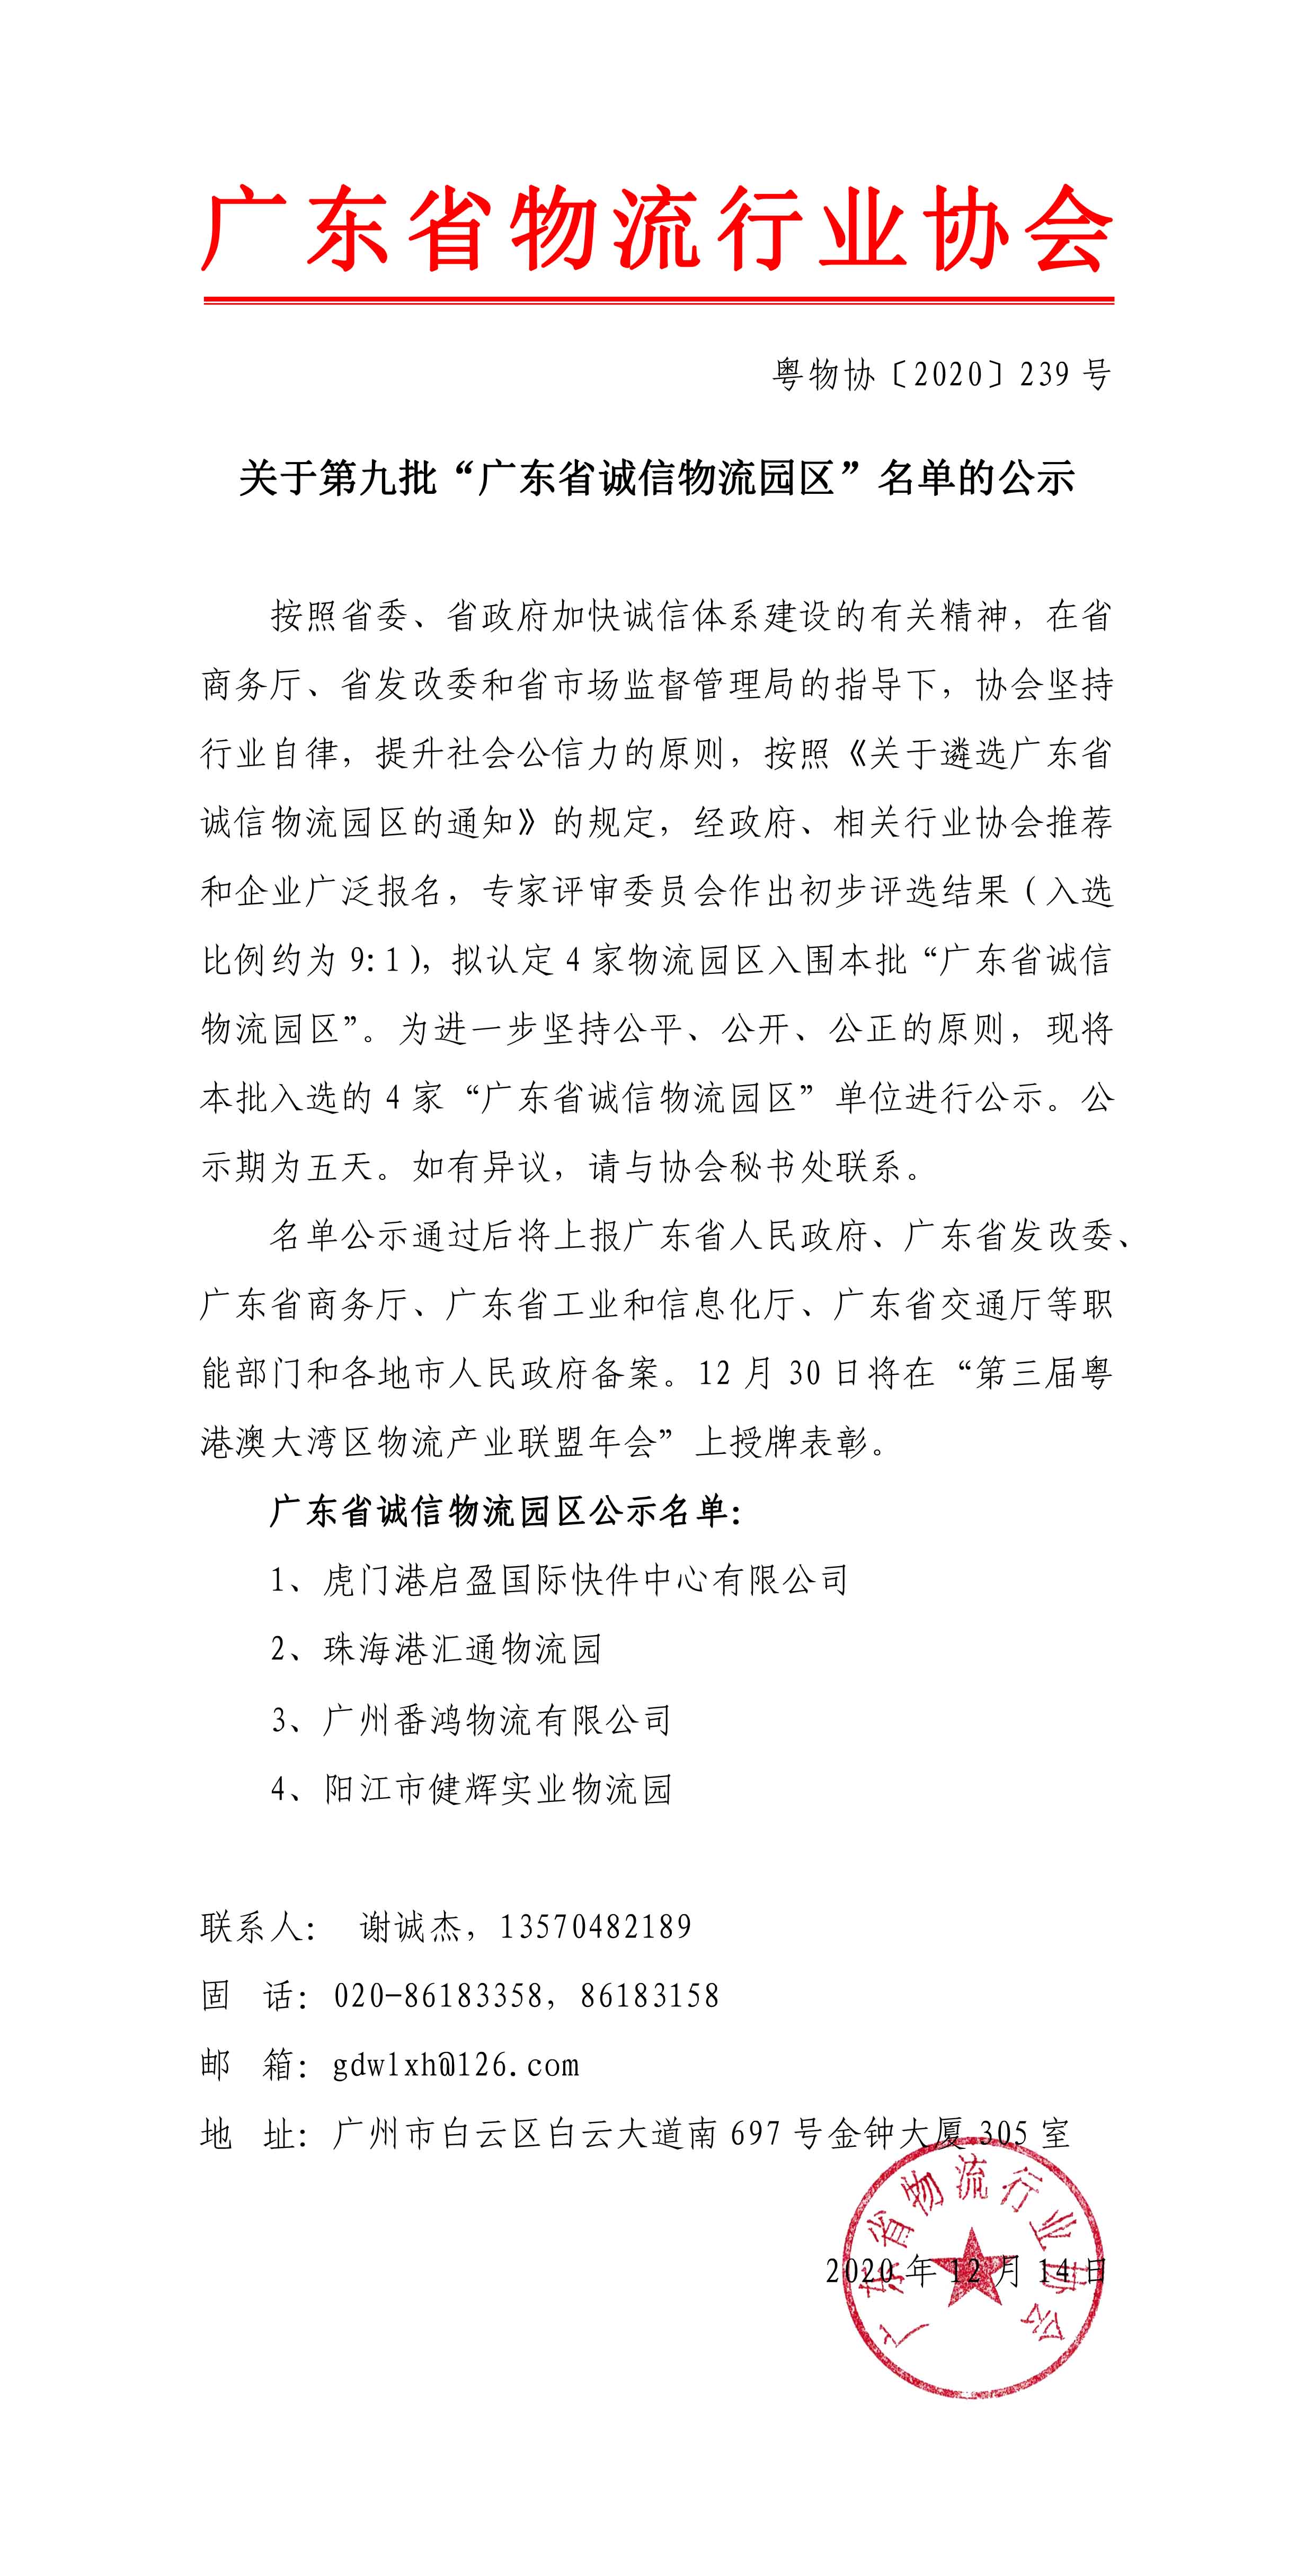 关于第九批“广东省诚信物流园区”名单的公示20201211-1.jpg